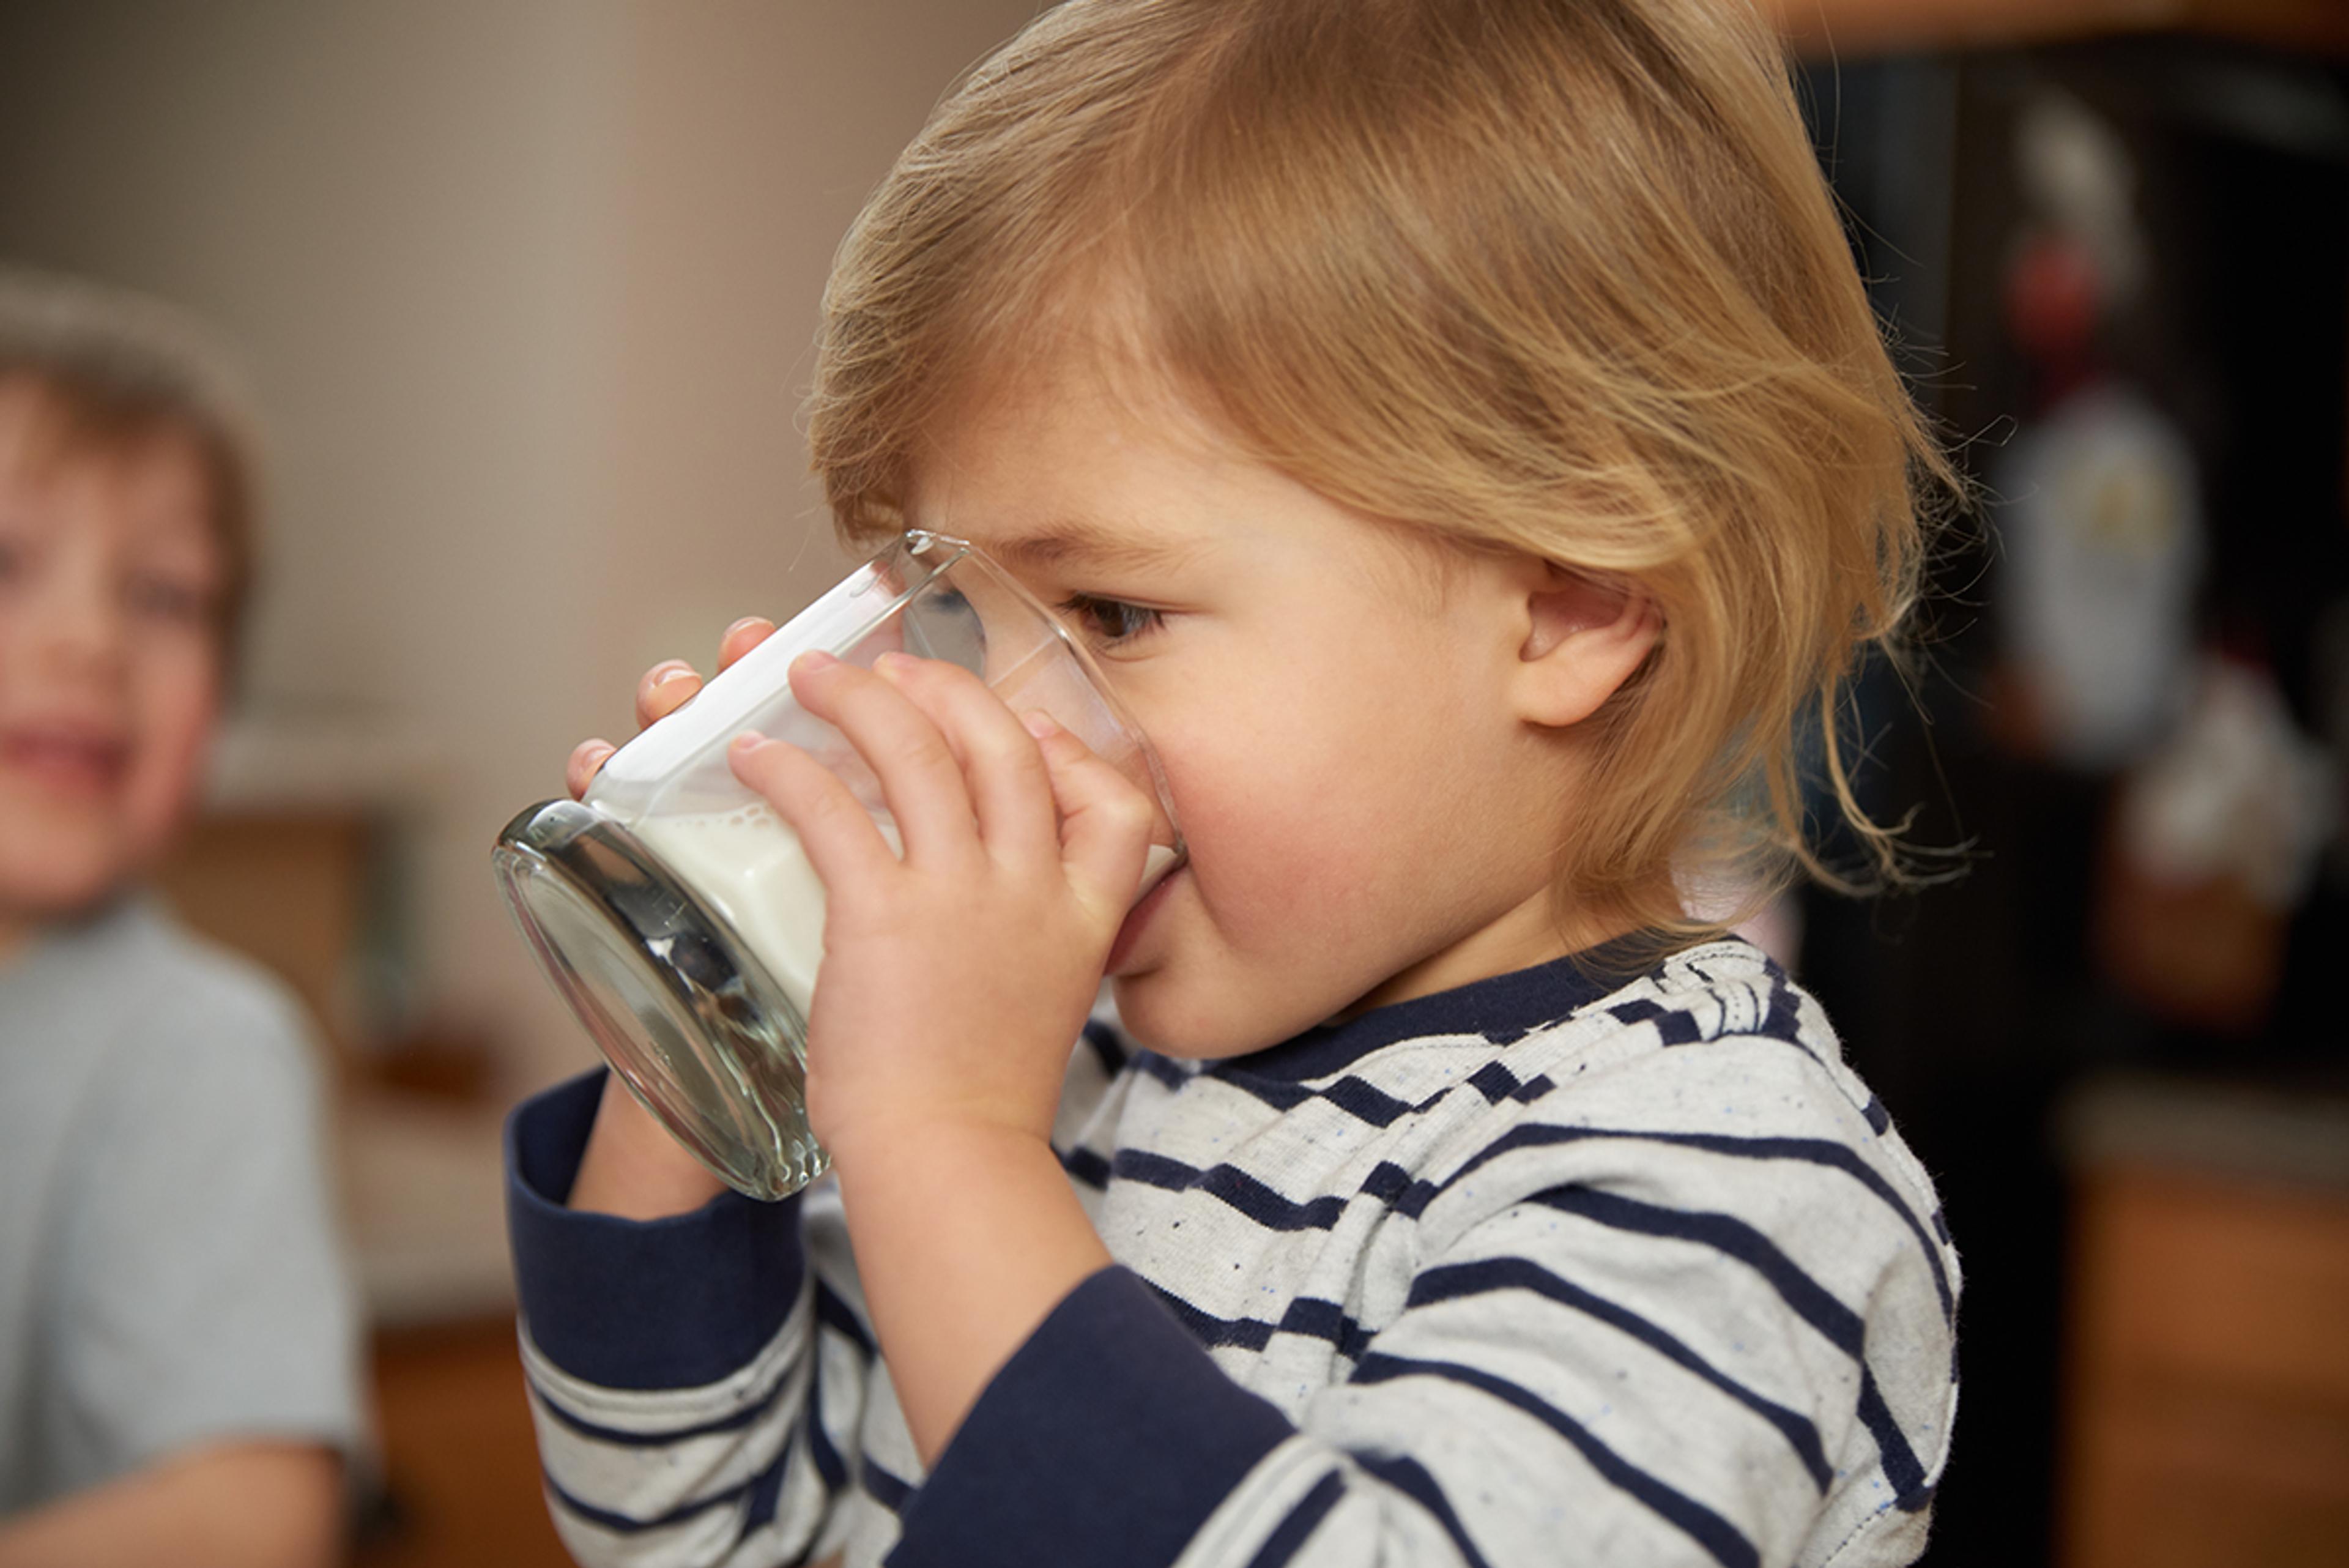 A little boy wearing a striped shirt drinks a glass of milk.